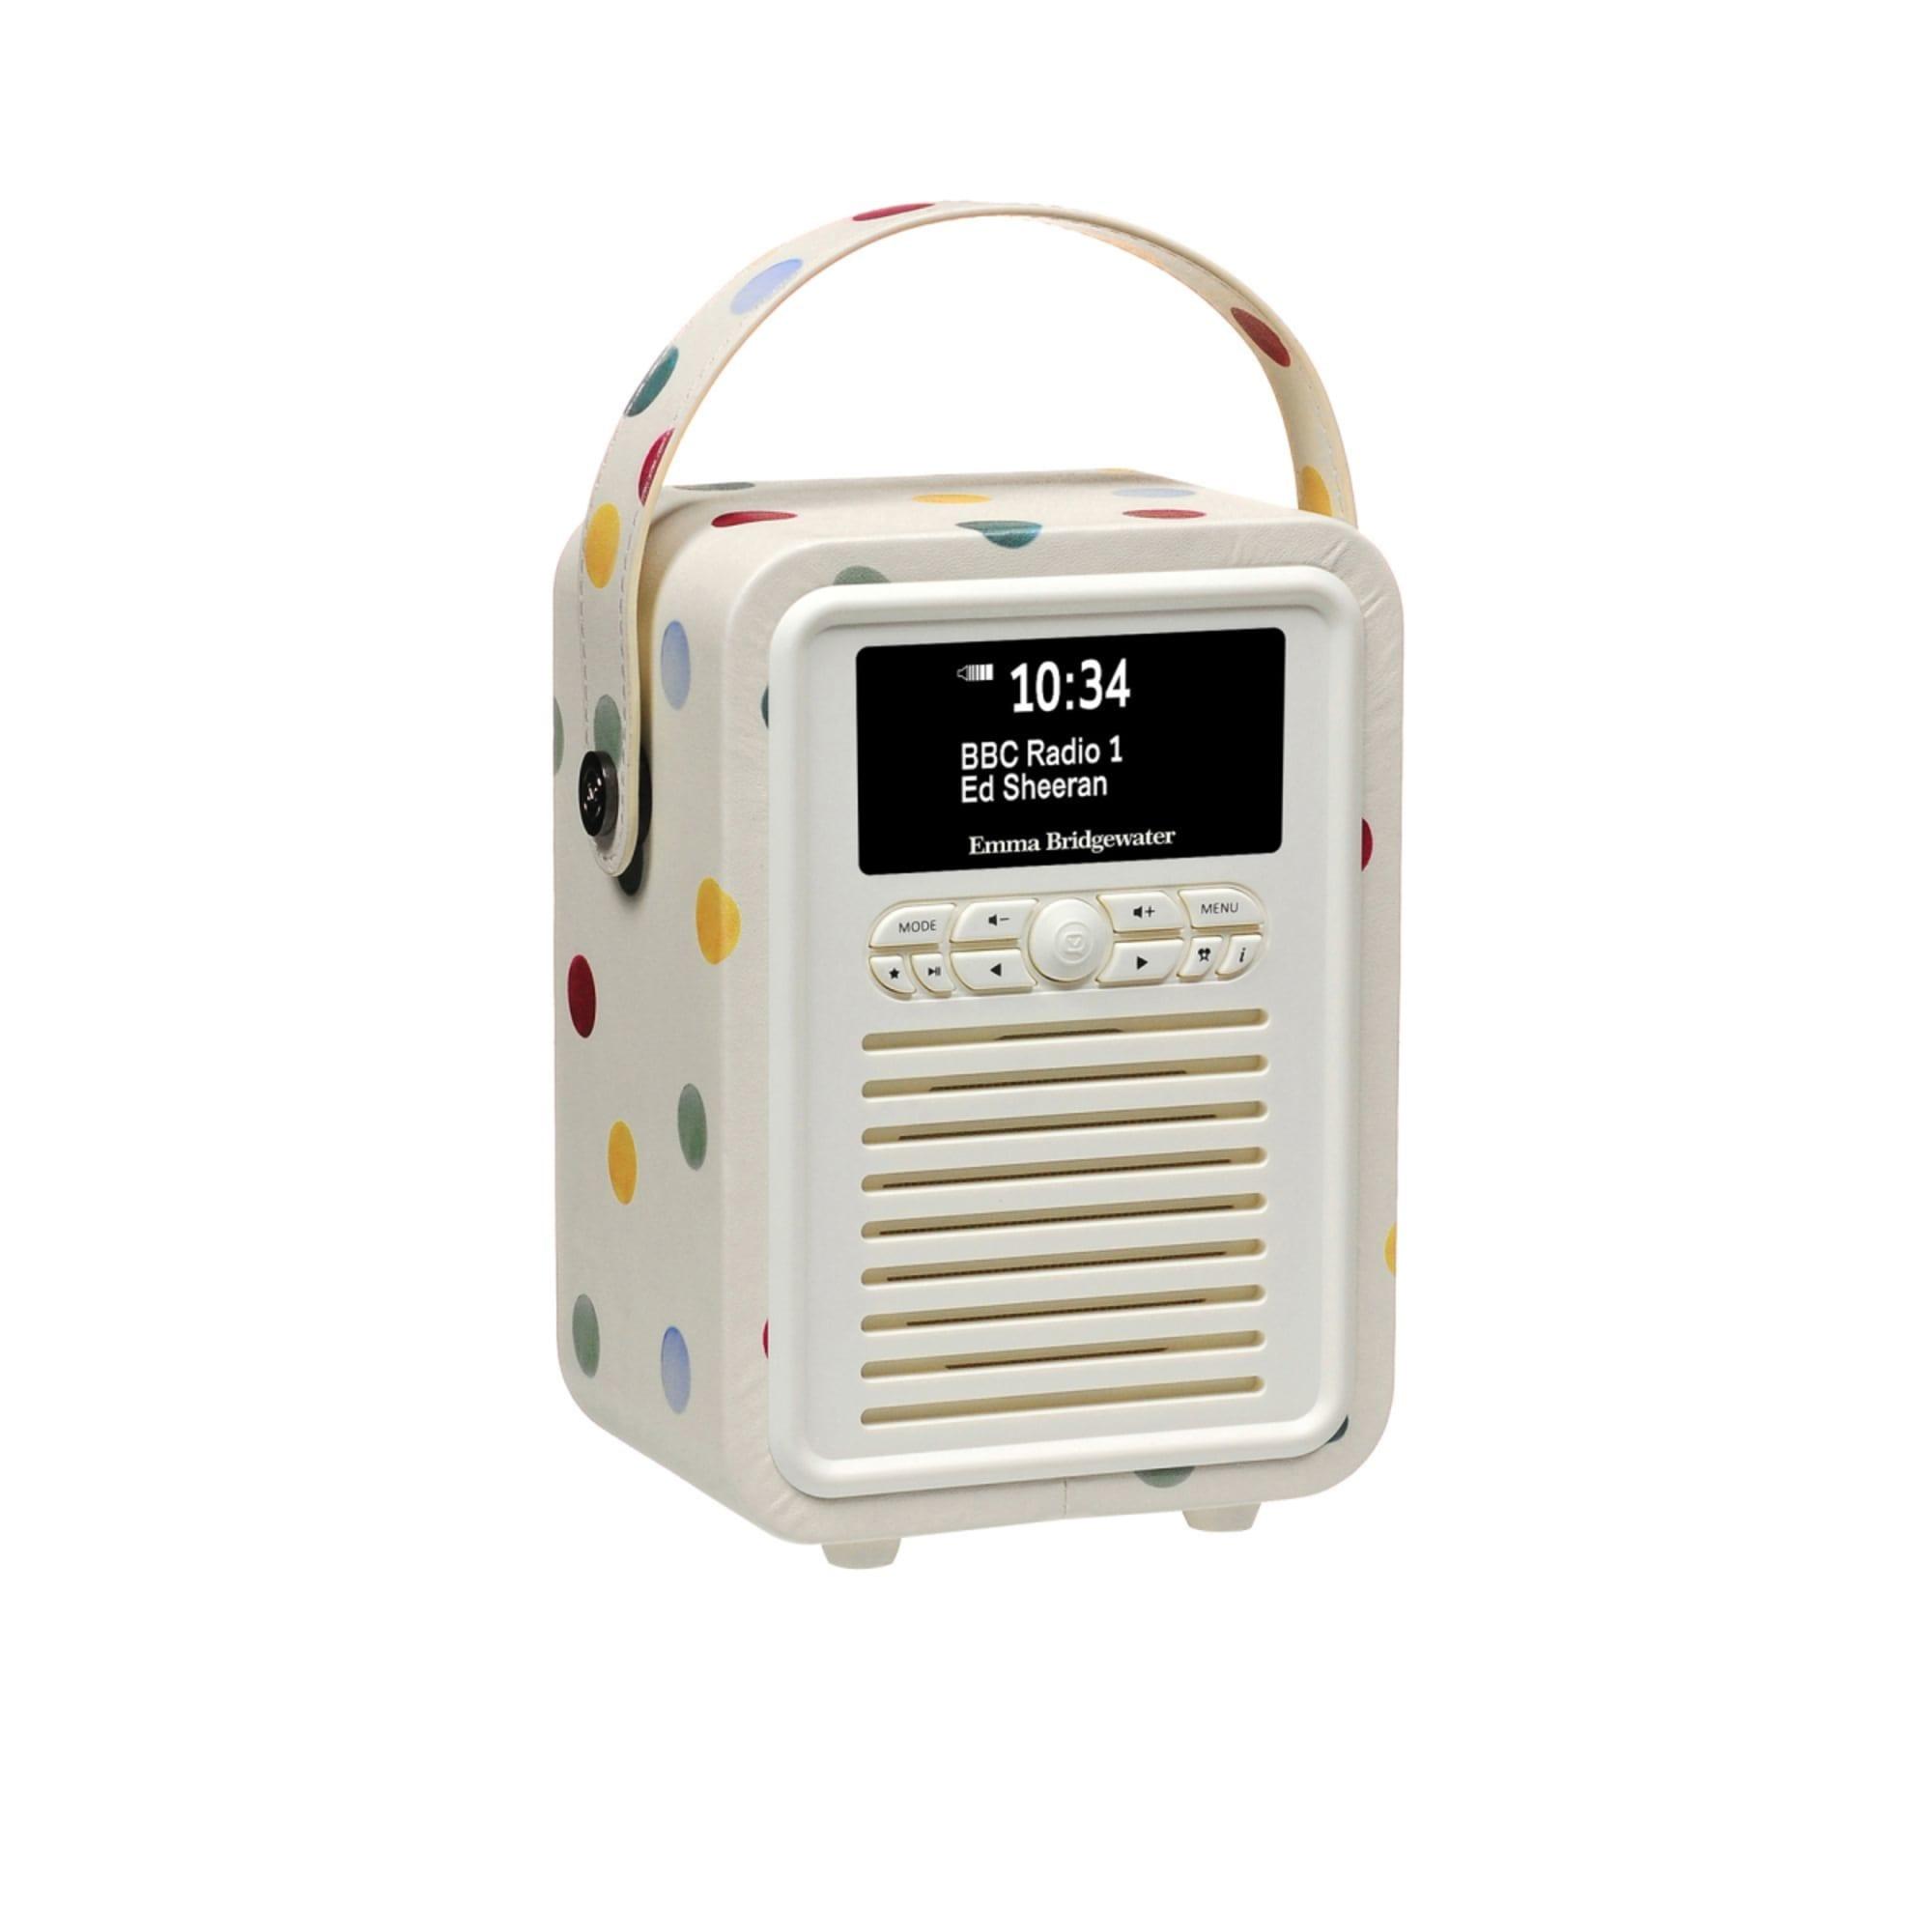 VQ Retro Mini DAB+ Digital Radio Emma Bridgewater Polka Dot Image 3